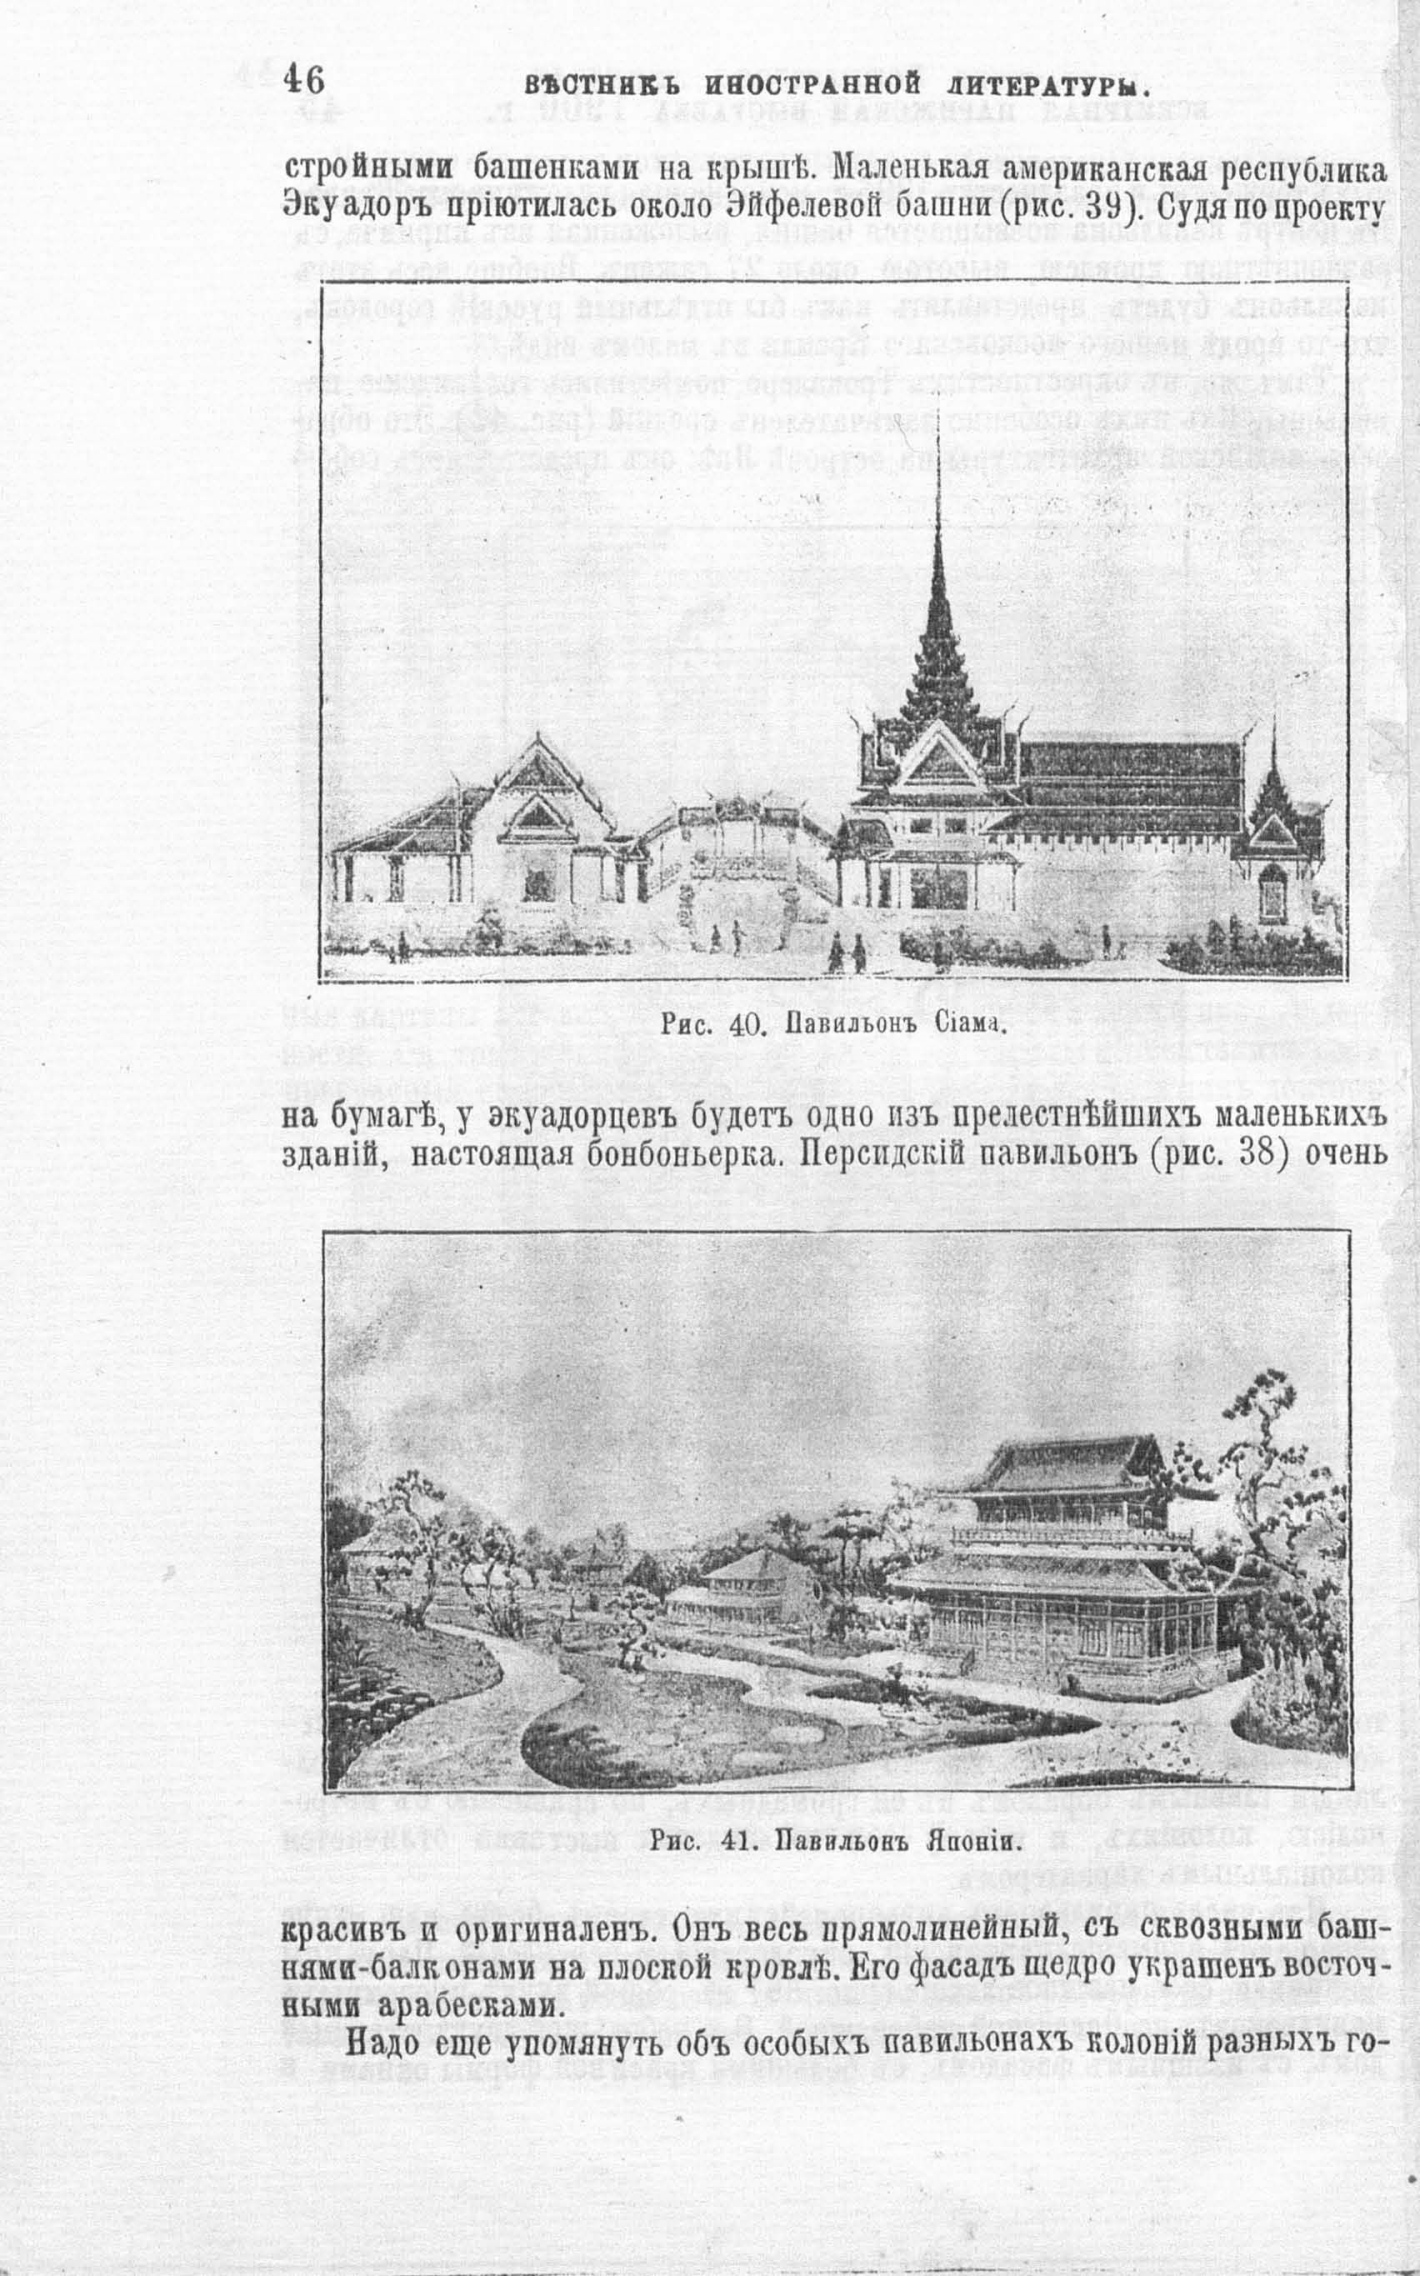 Всемирная выставка 1900 года в Париже. Павильоны Сиама и Японии